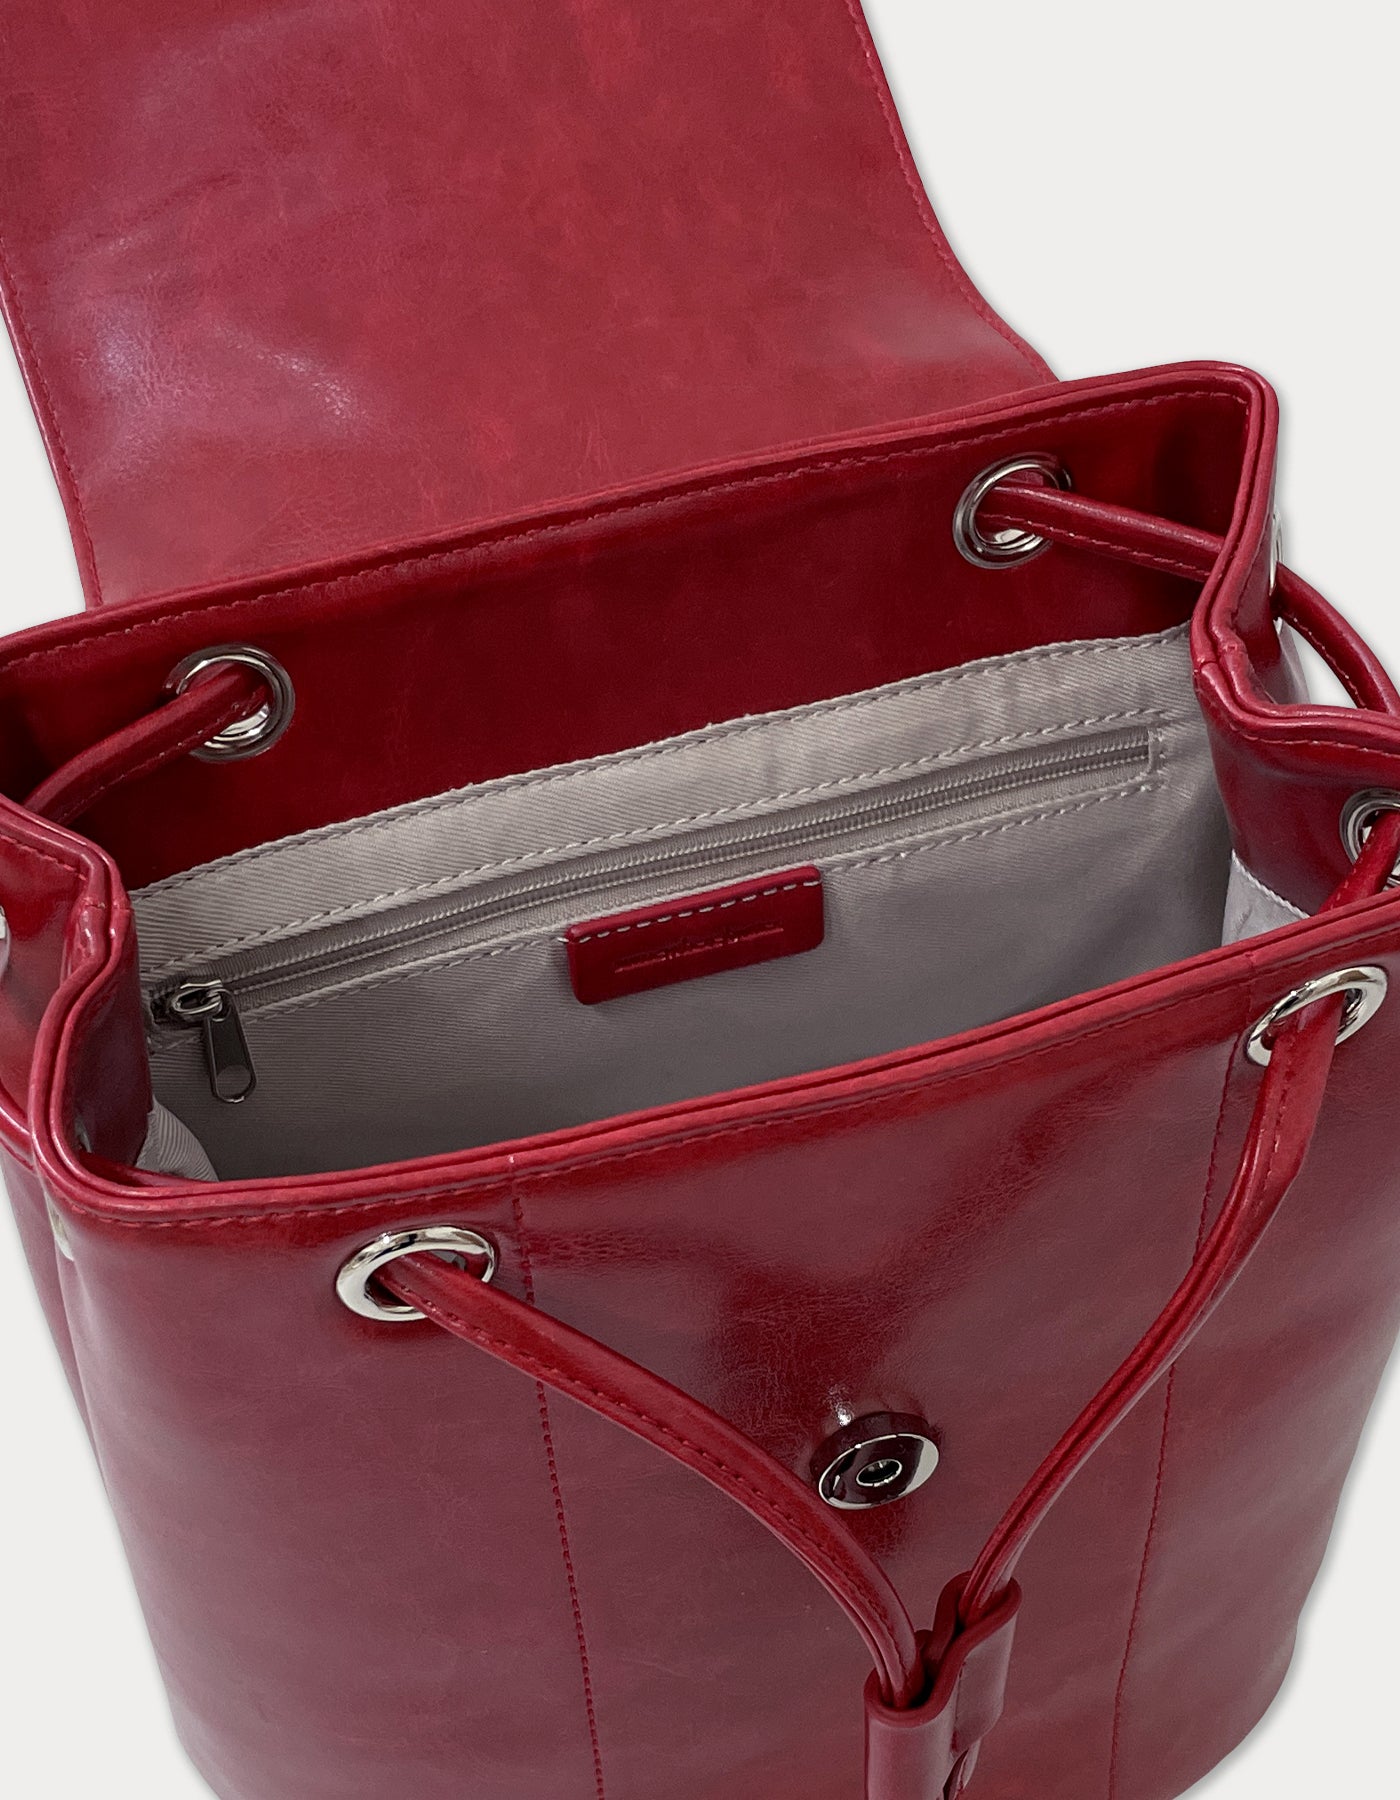 fle backpack - vintage red